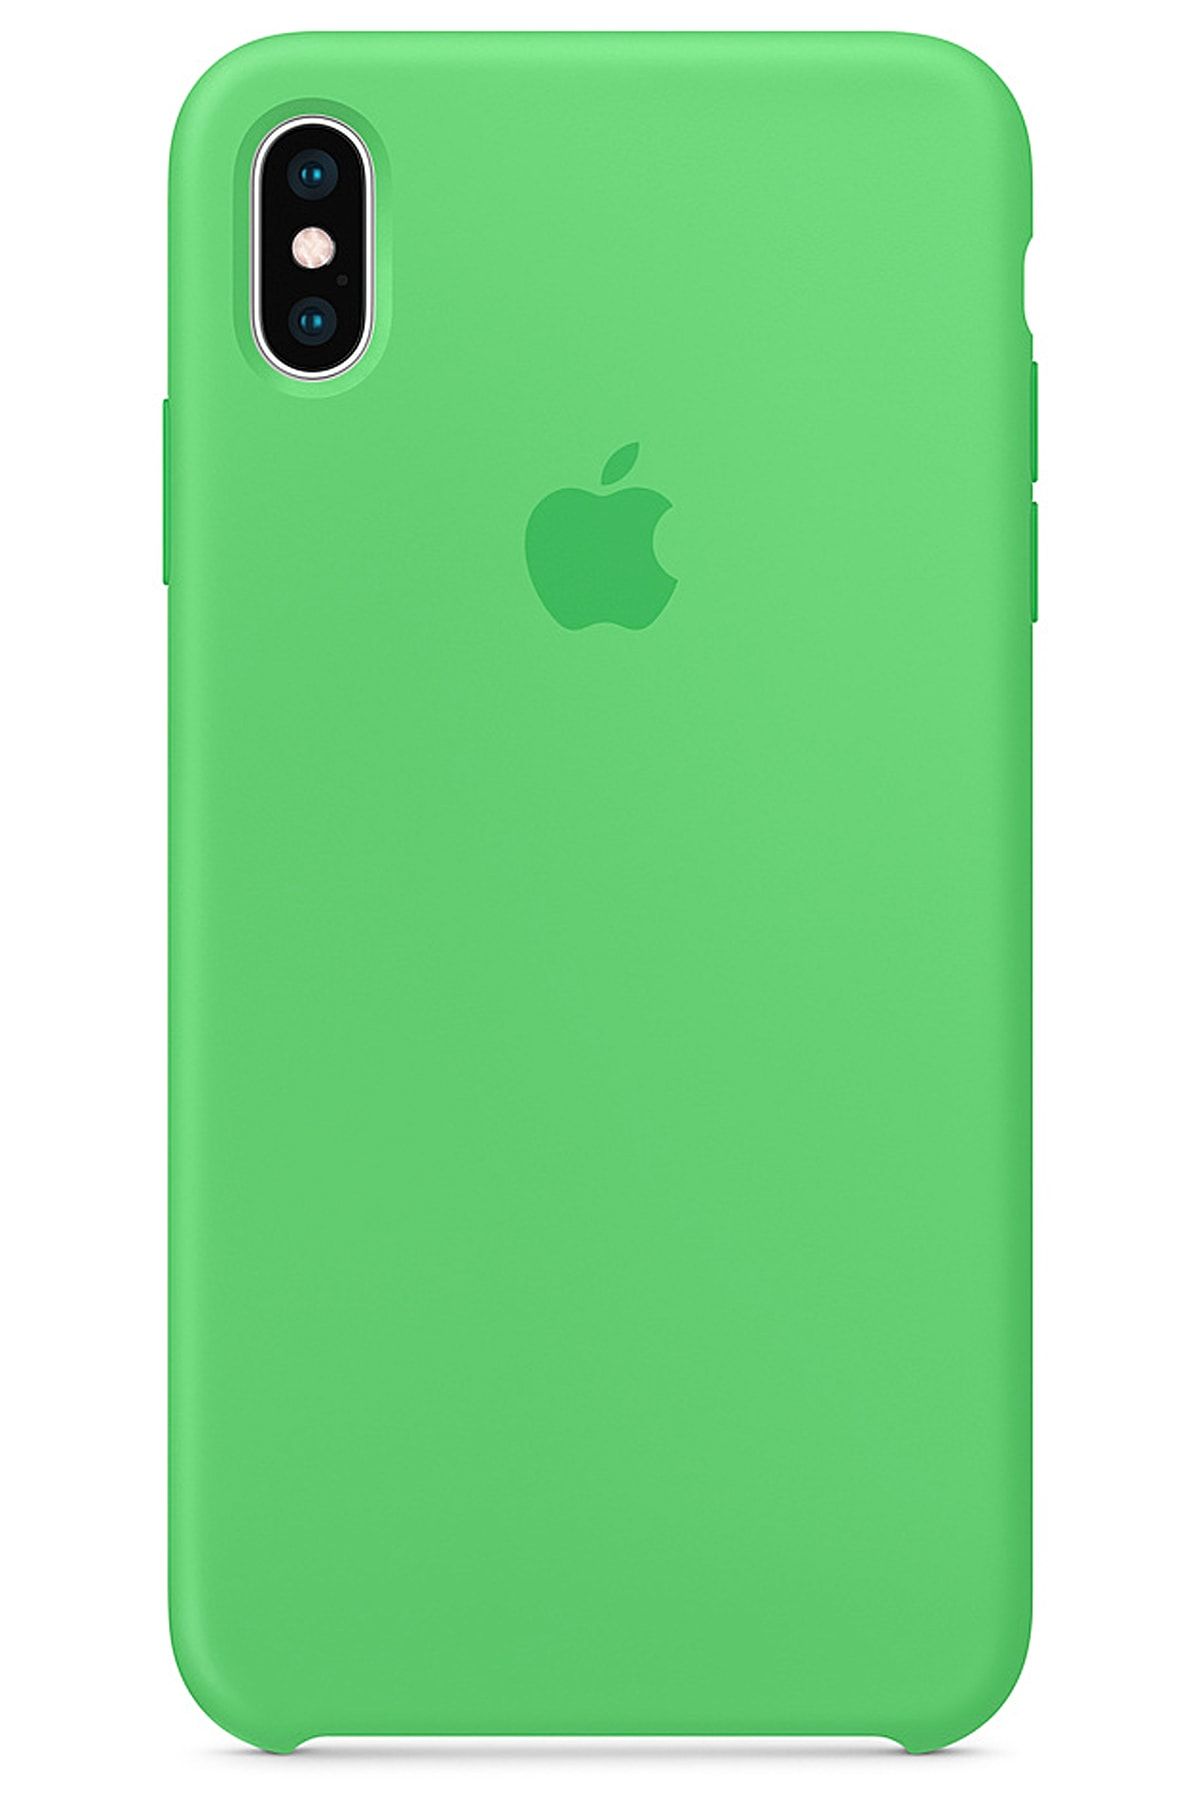 Ebotek Iphone Xs Max Kılıf Silikon Içi Kadife Lansman Yeşil